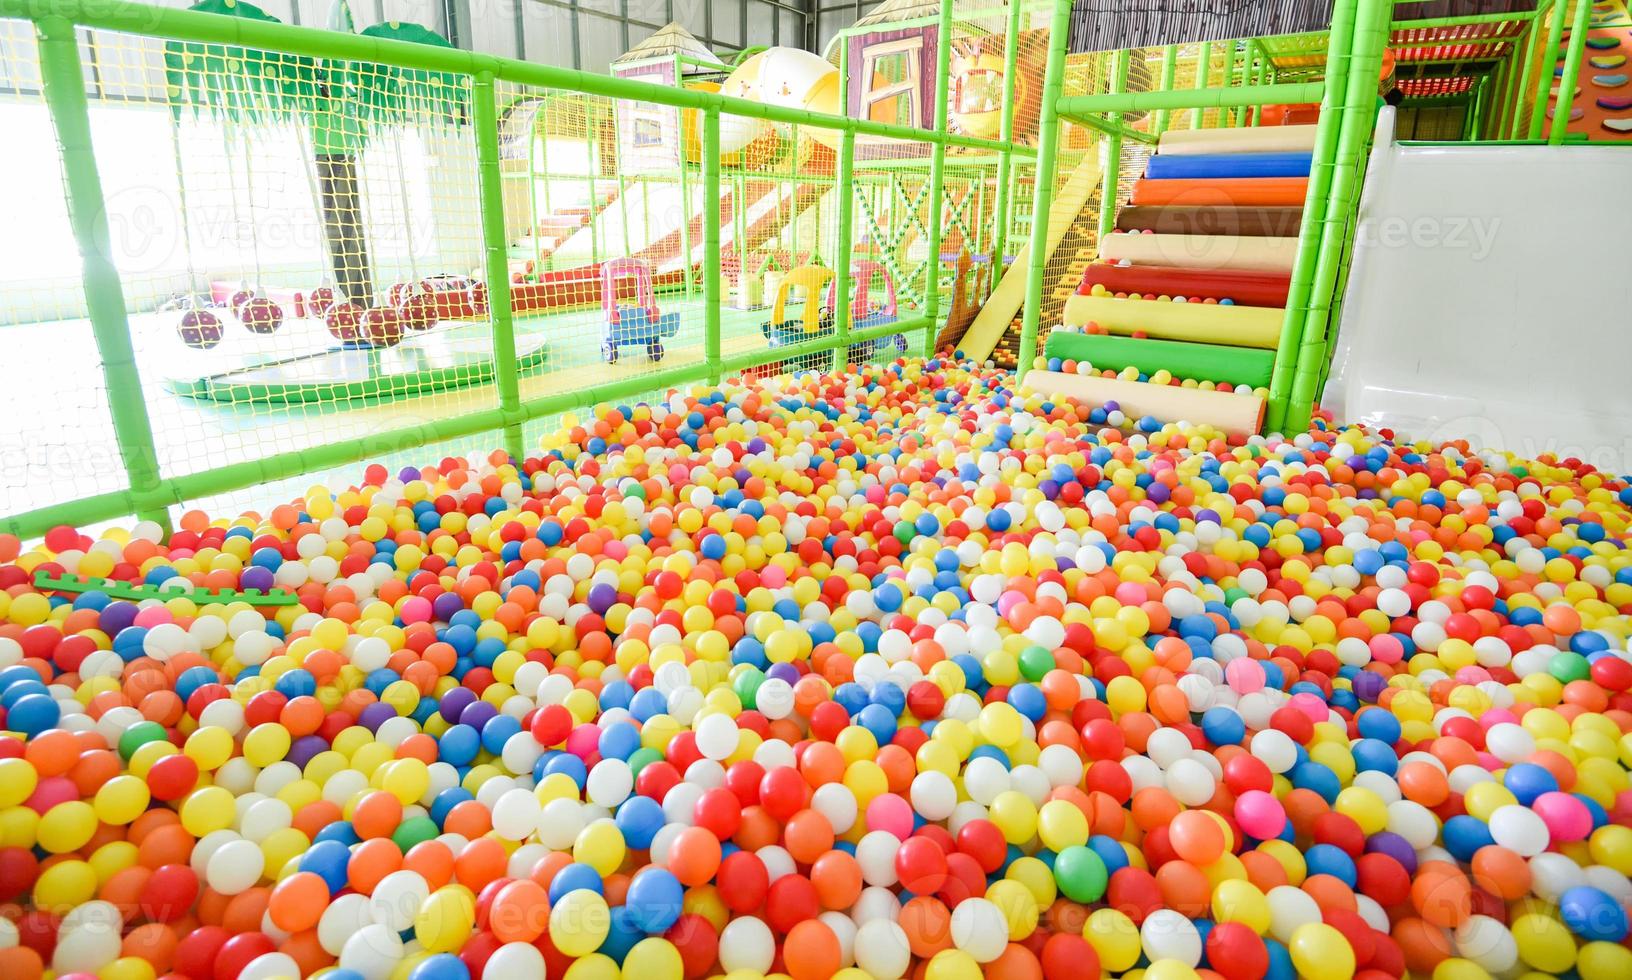 Kinderspielplatz drinnen im Vergnügungspark mit bunten Bällen zum Spielen - im schönen Kinderspielball aus farbigem Kunststoff des Spielzimmers foto